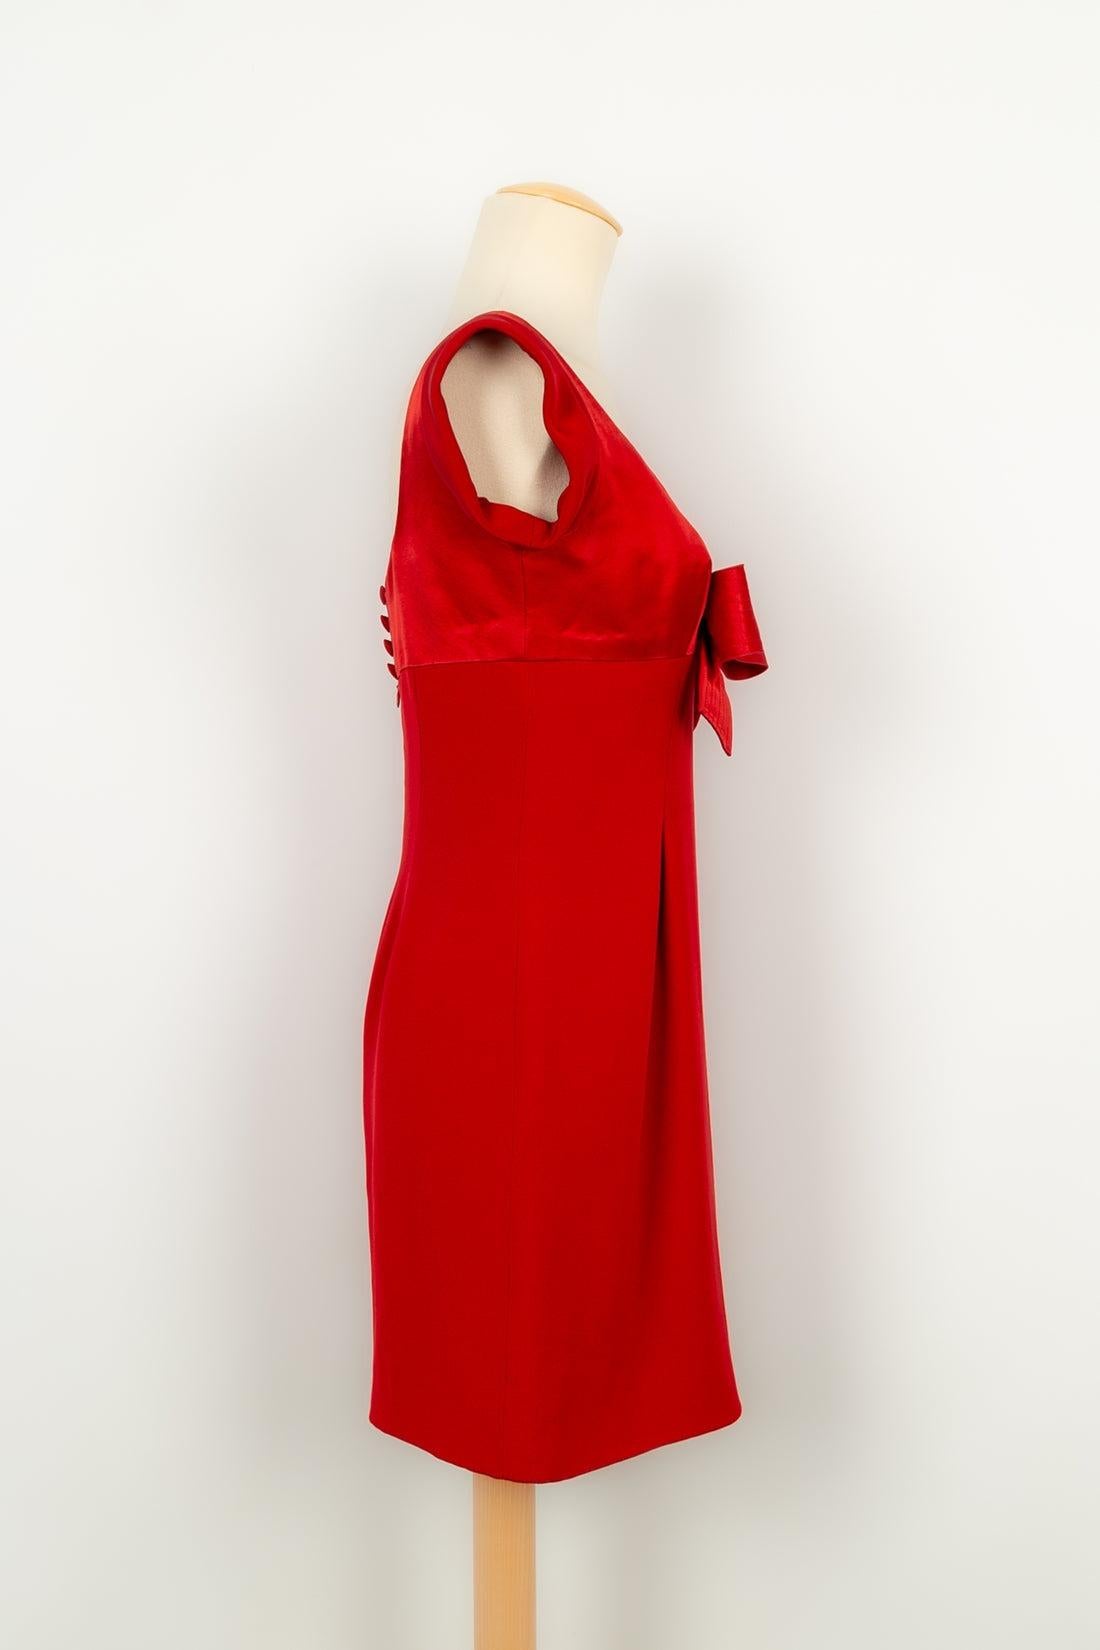 Christian Lacroix - Haute Couture Kleid aus roter Seide, mit Seidenfutter. Keine Größenangabe, es passt ein 38FR/40FR. Kleid, das Lady Diana im September 1995 im Petit Palais in Paris trug.

Zusätzliche Informationen:
Zustand: Sehr guter